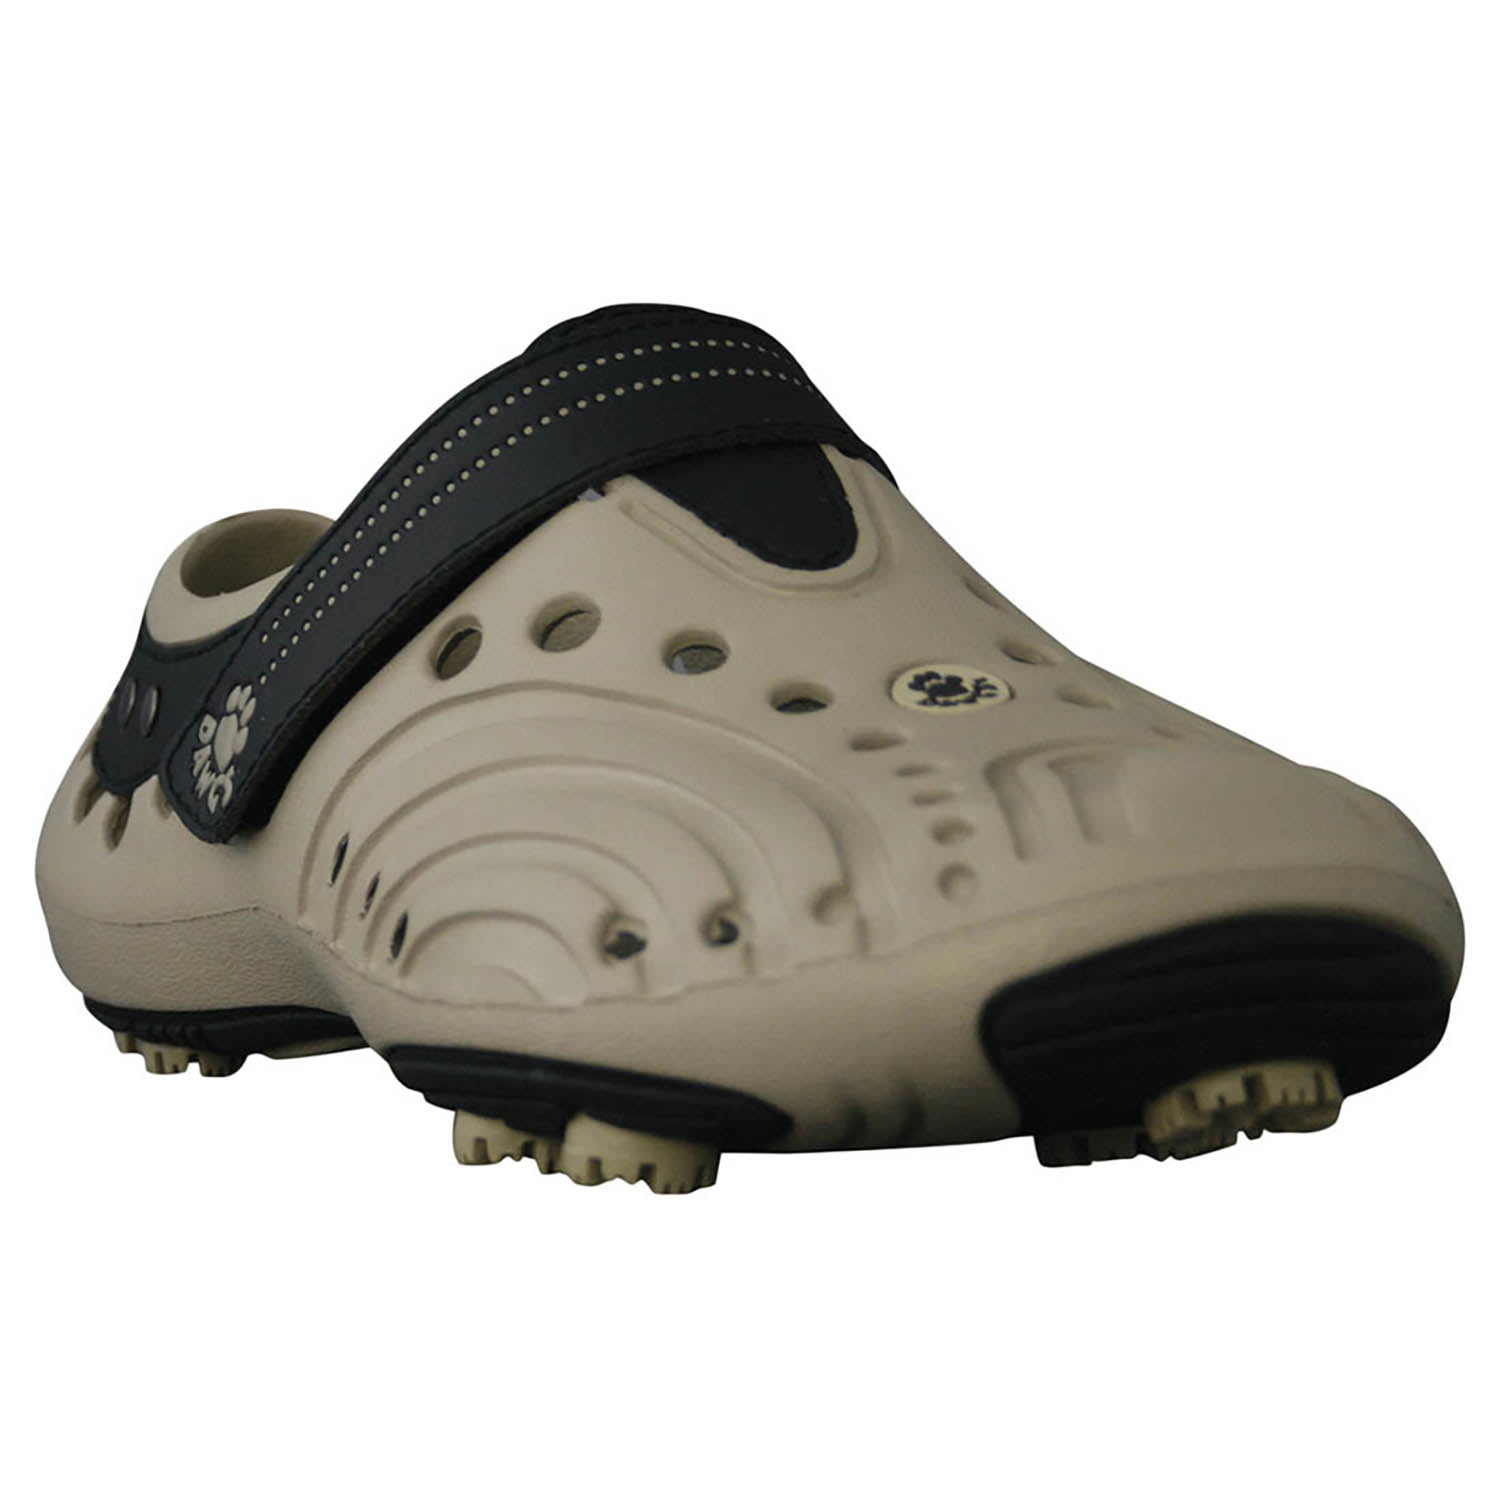 Dawgs Spirit Men's Golf Shoe, Black/Tan, Size 9 - Walmart ...